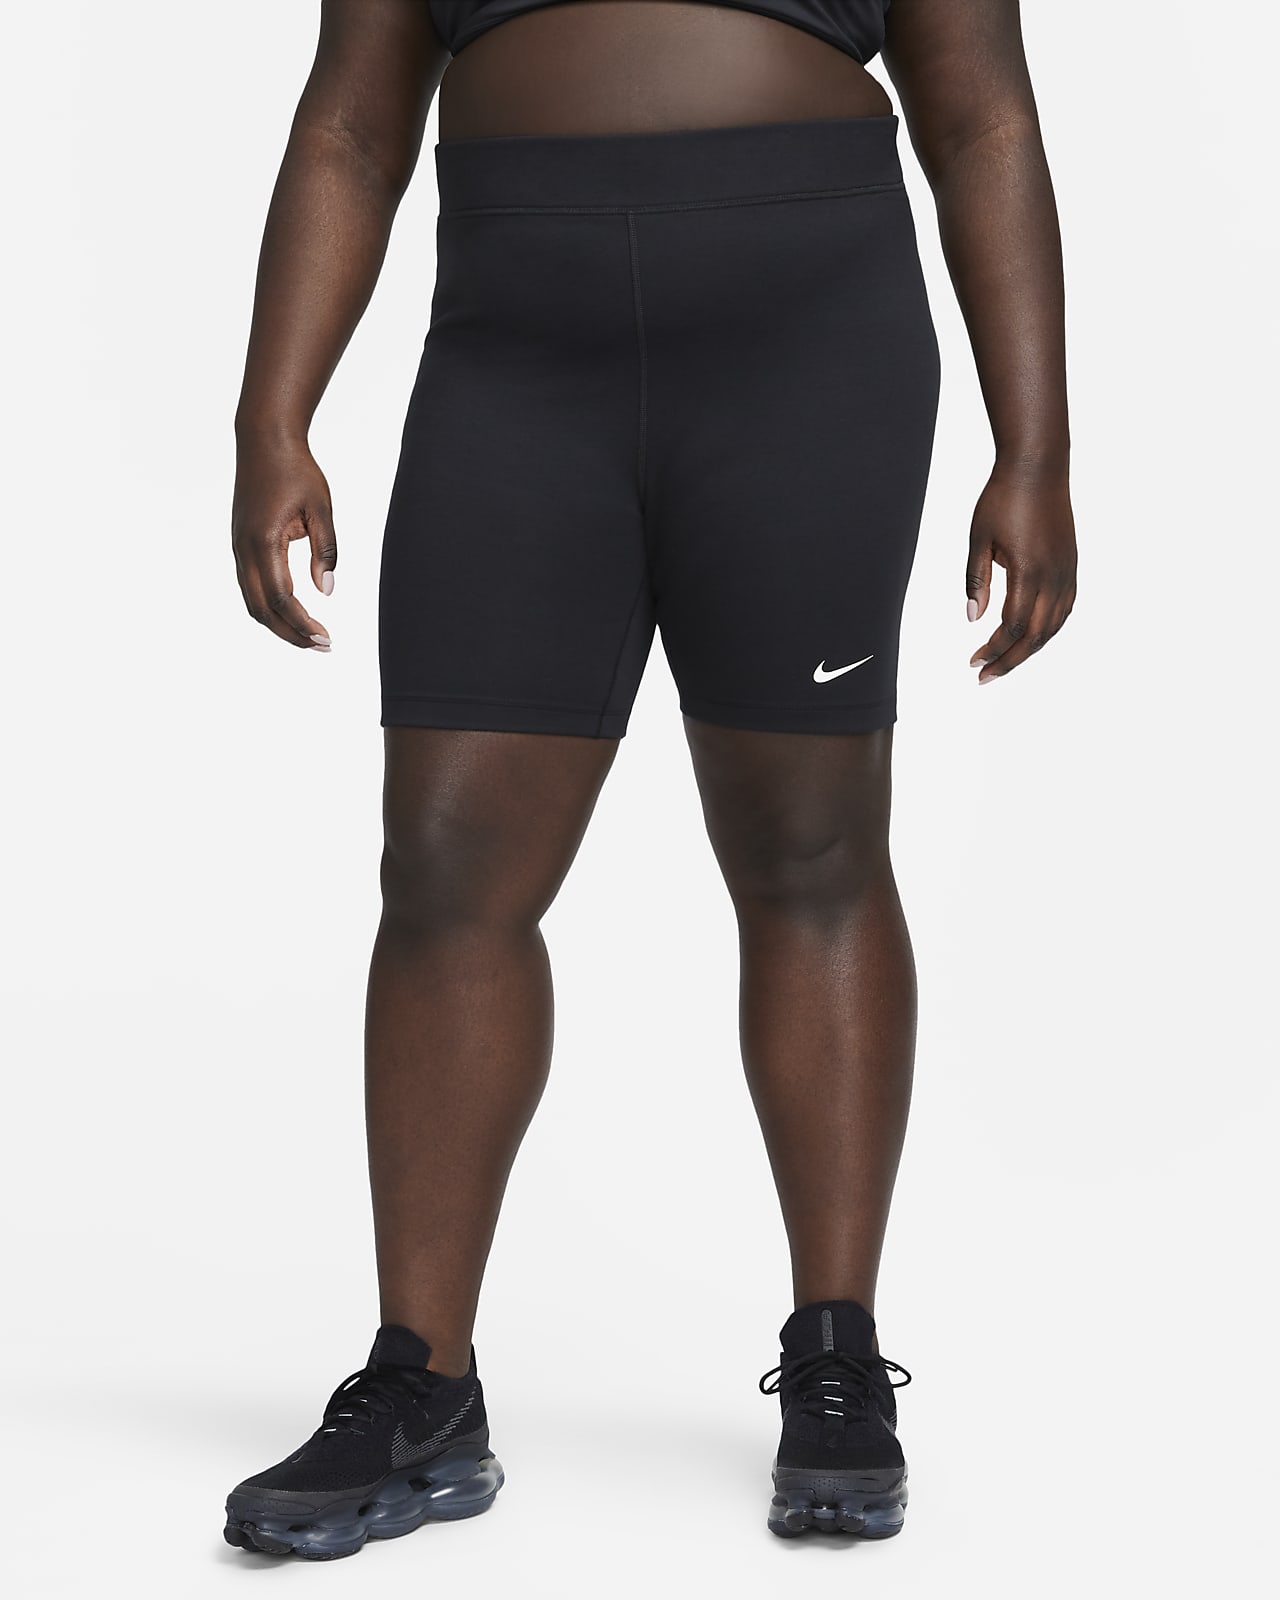 Damskie kolarki z wysokim stanem 20 cm Nike Sportswear Classic (duże rozmiary)